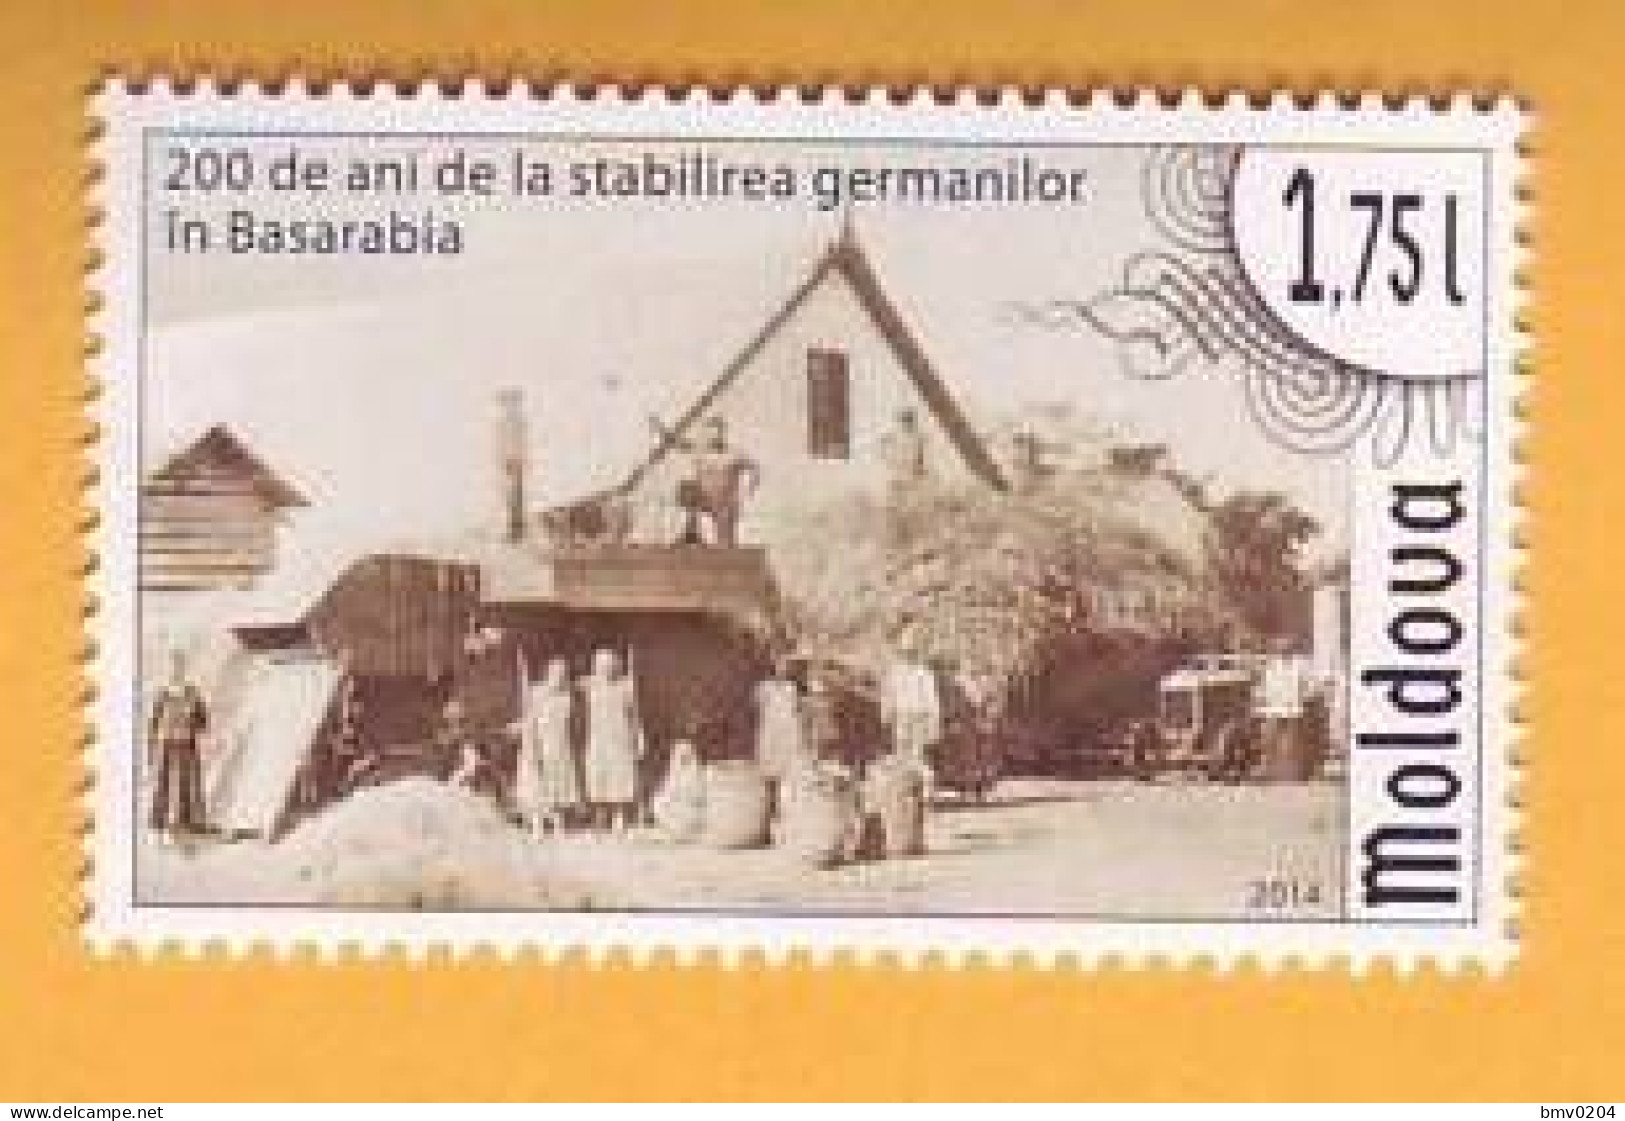 2014 Moldova Moldavie  Moldau  200 Years Of Germans In Bessarabia. Germany 1v Mint - Moldova